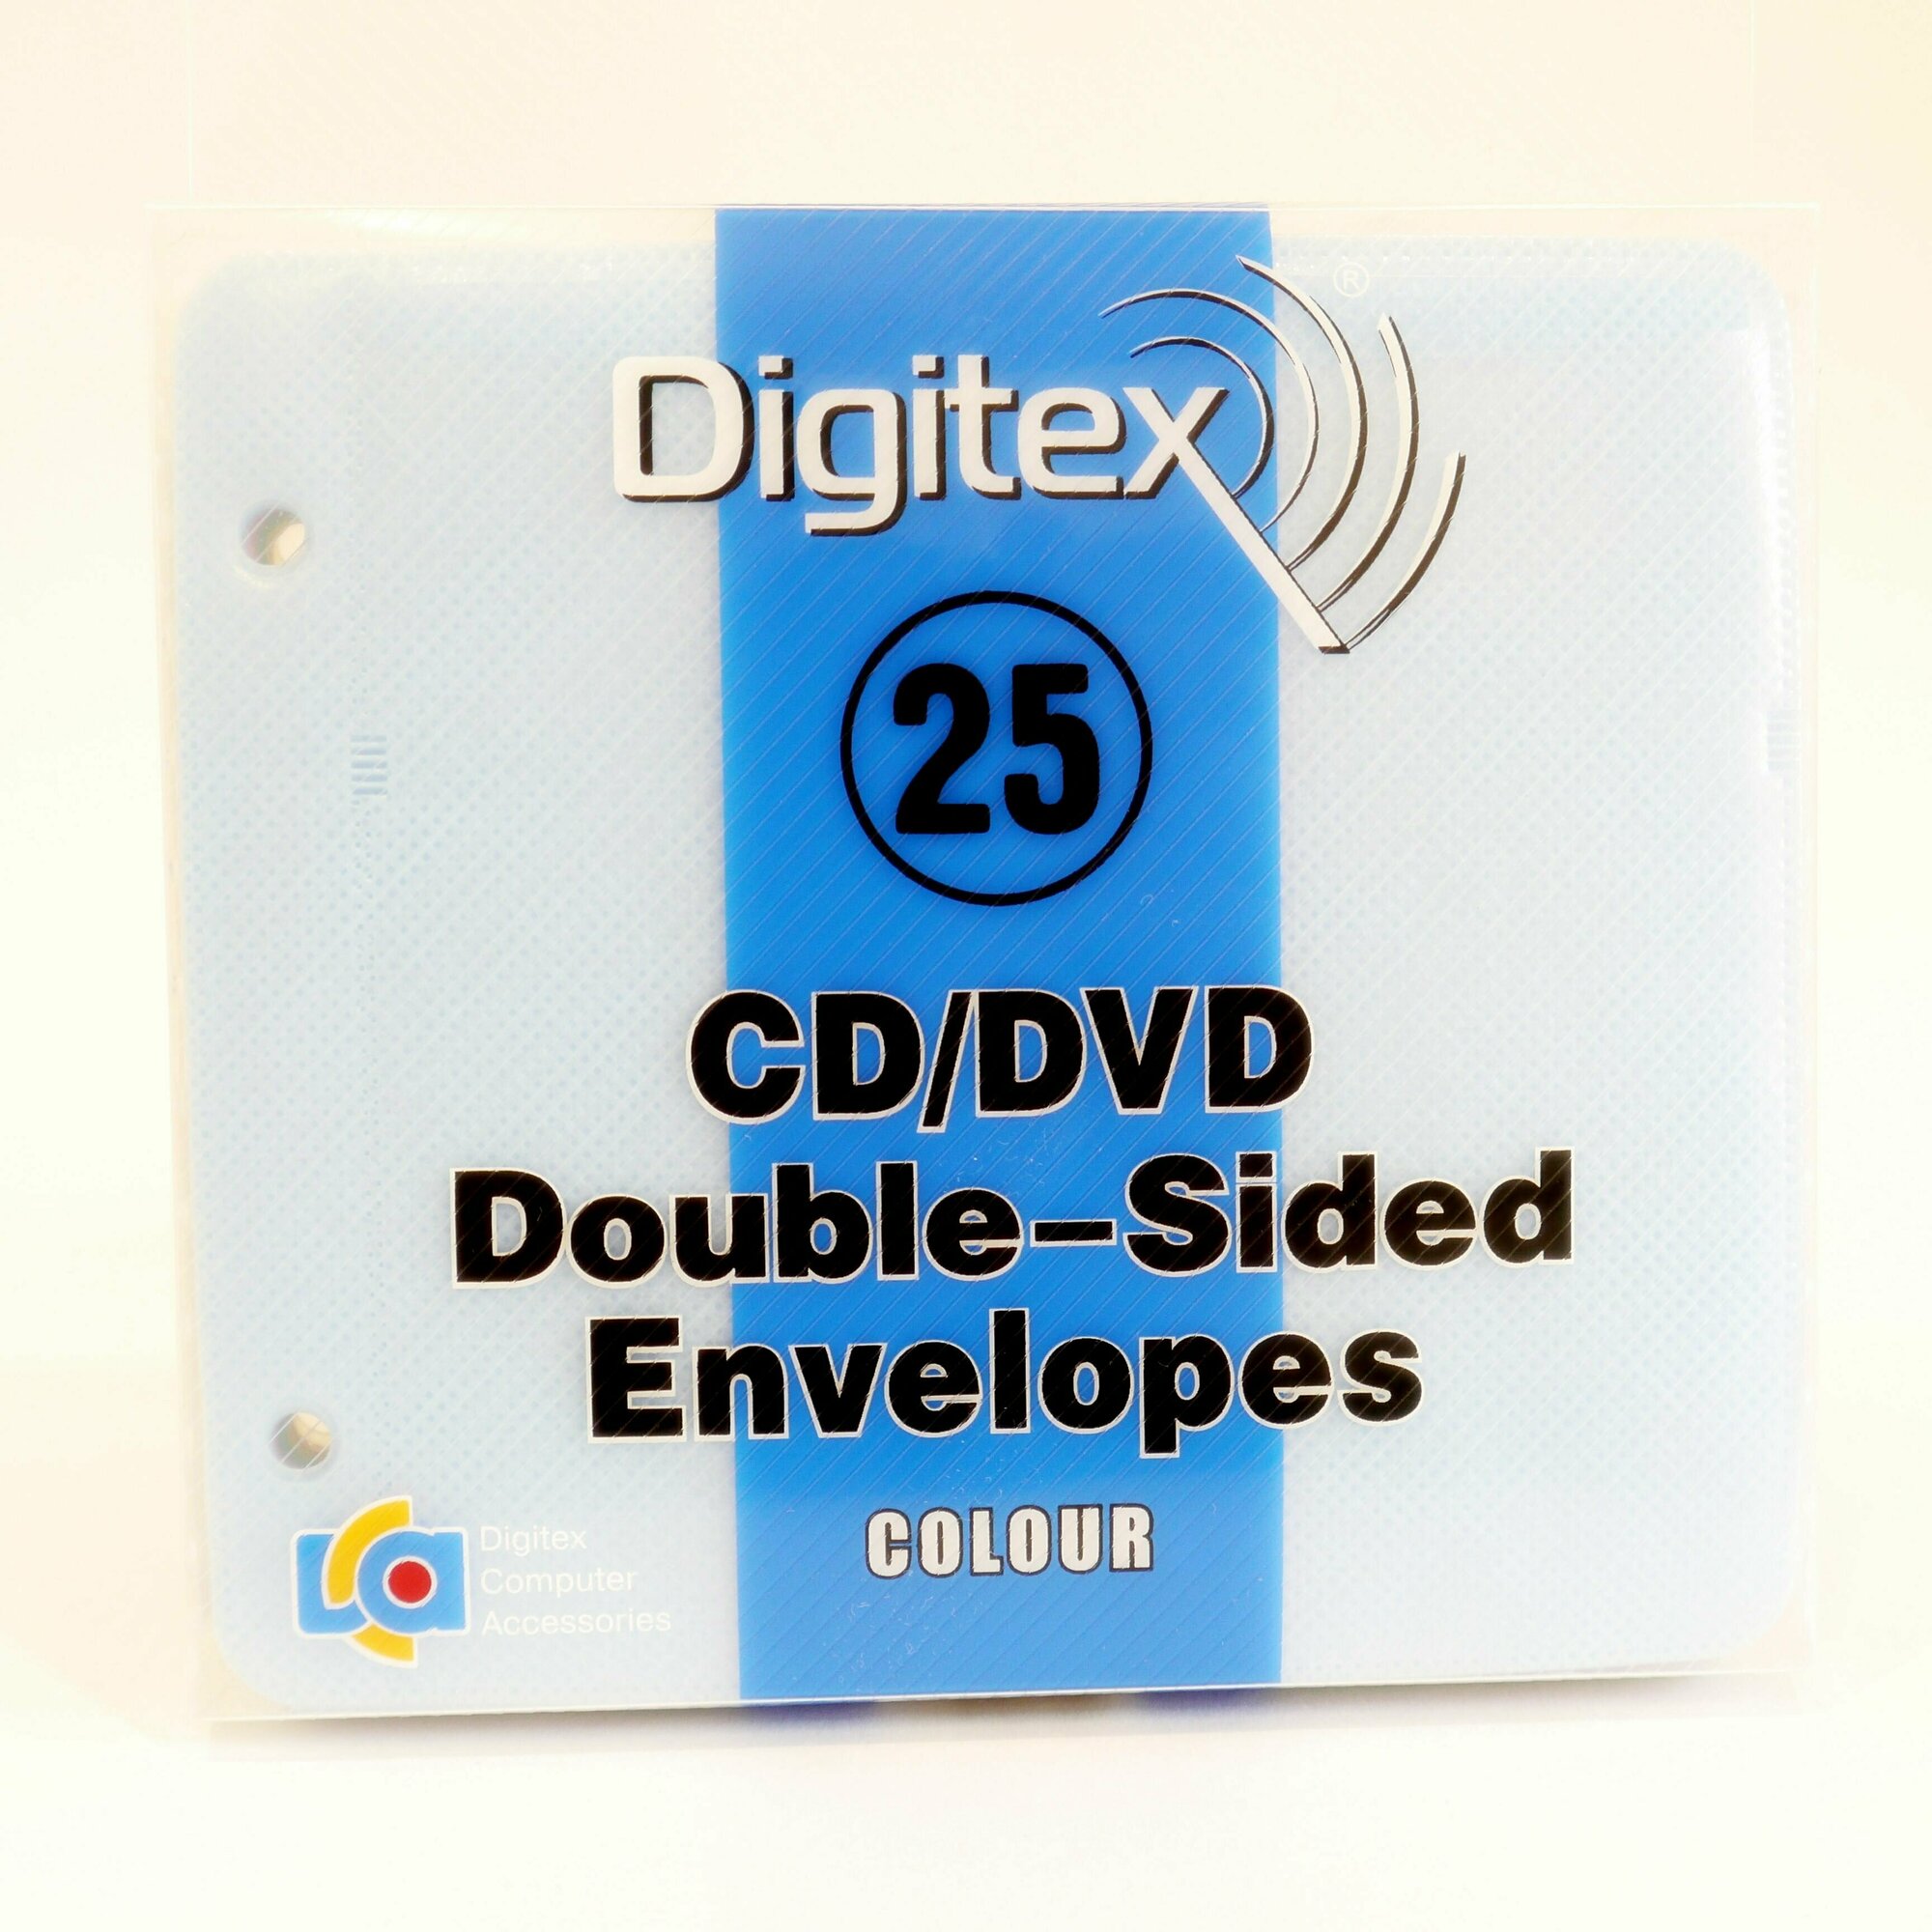 Конверты для CD DVD дисков Digitex на 2 диска пластиковые, цветные, 25 штук